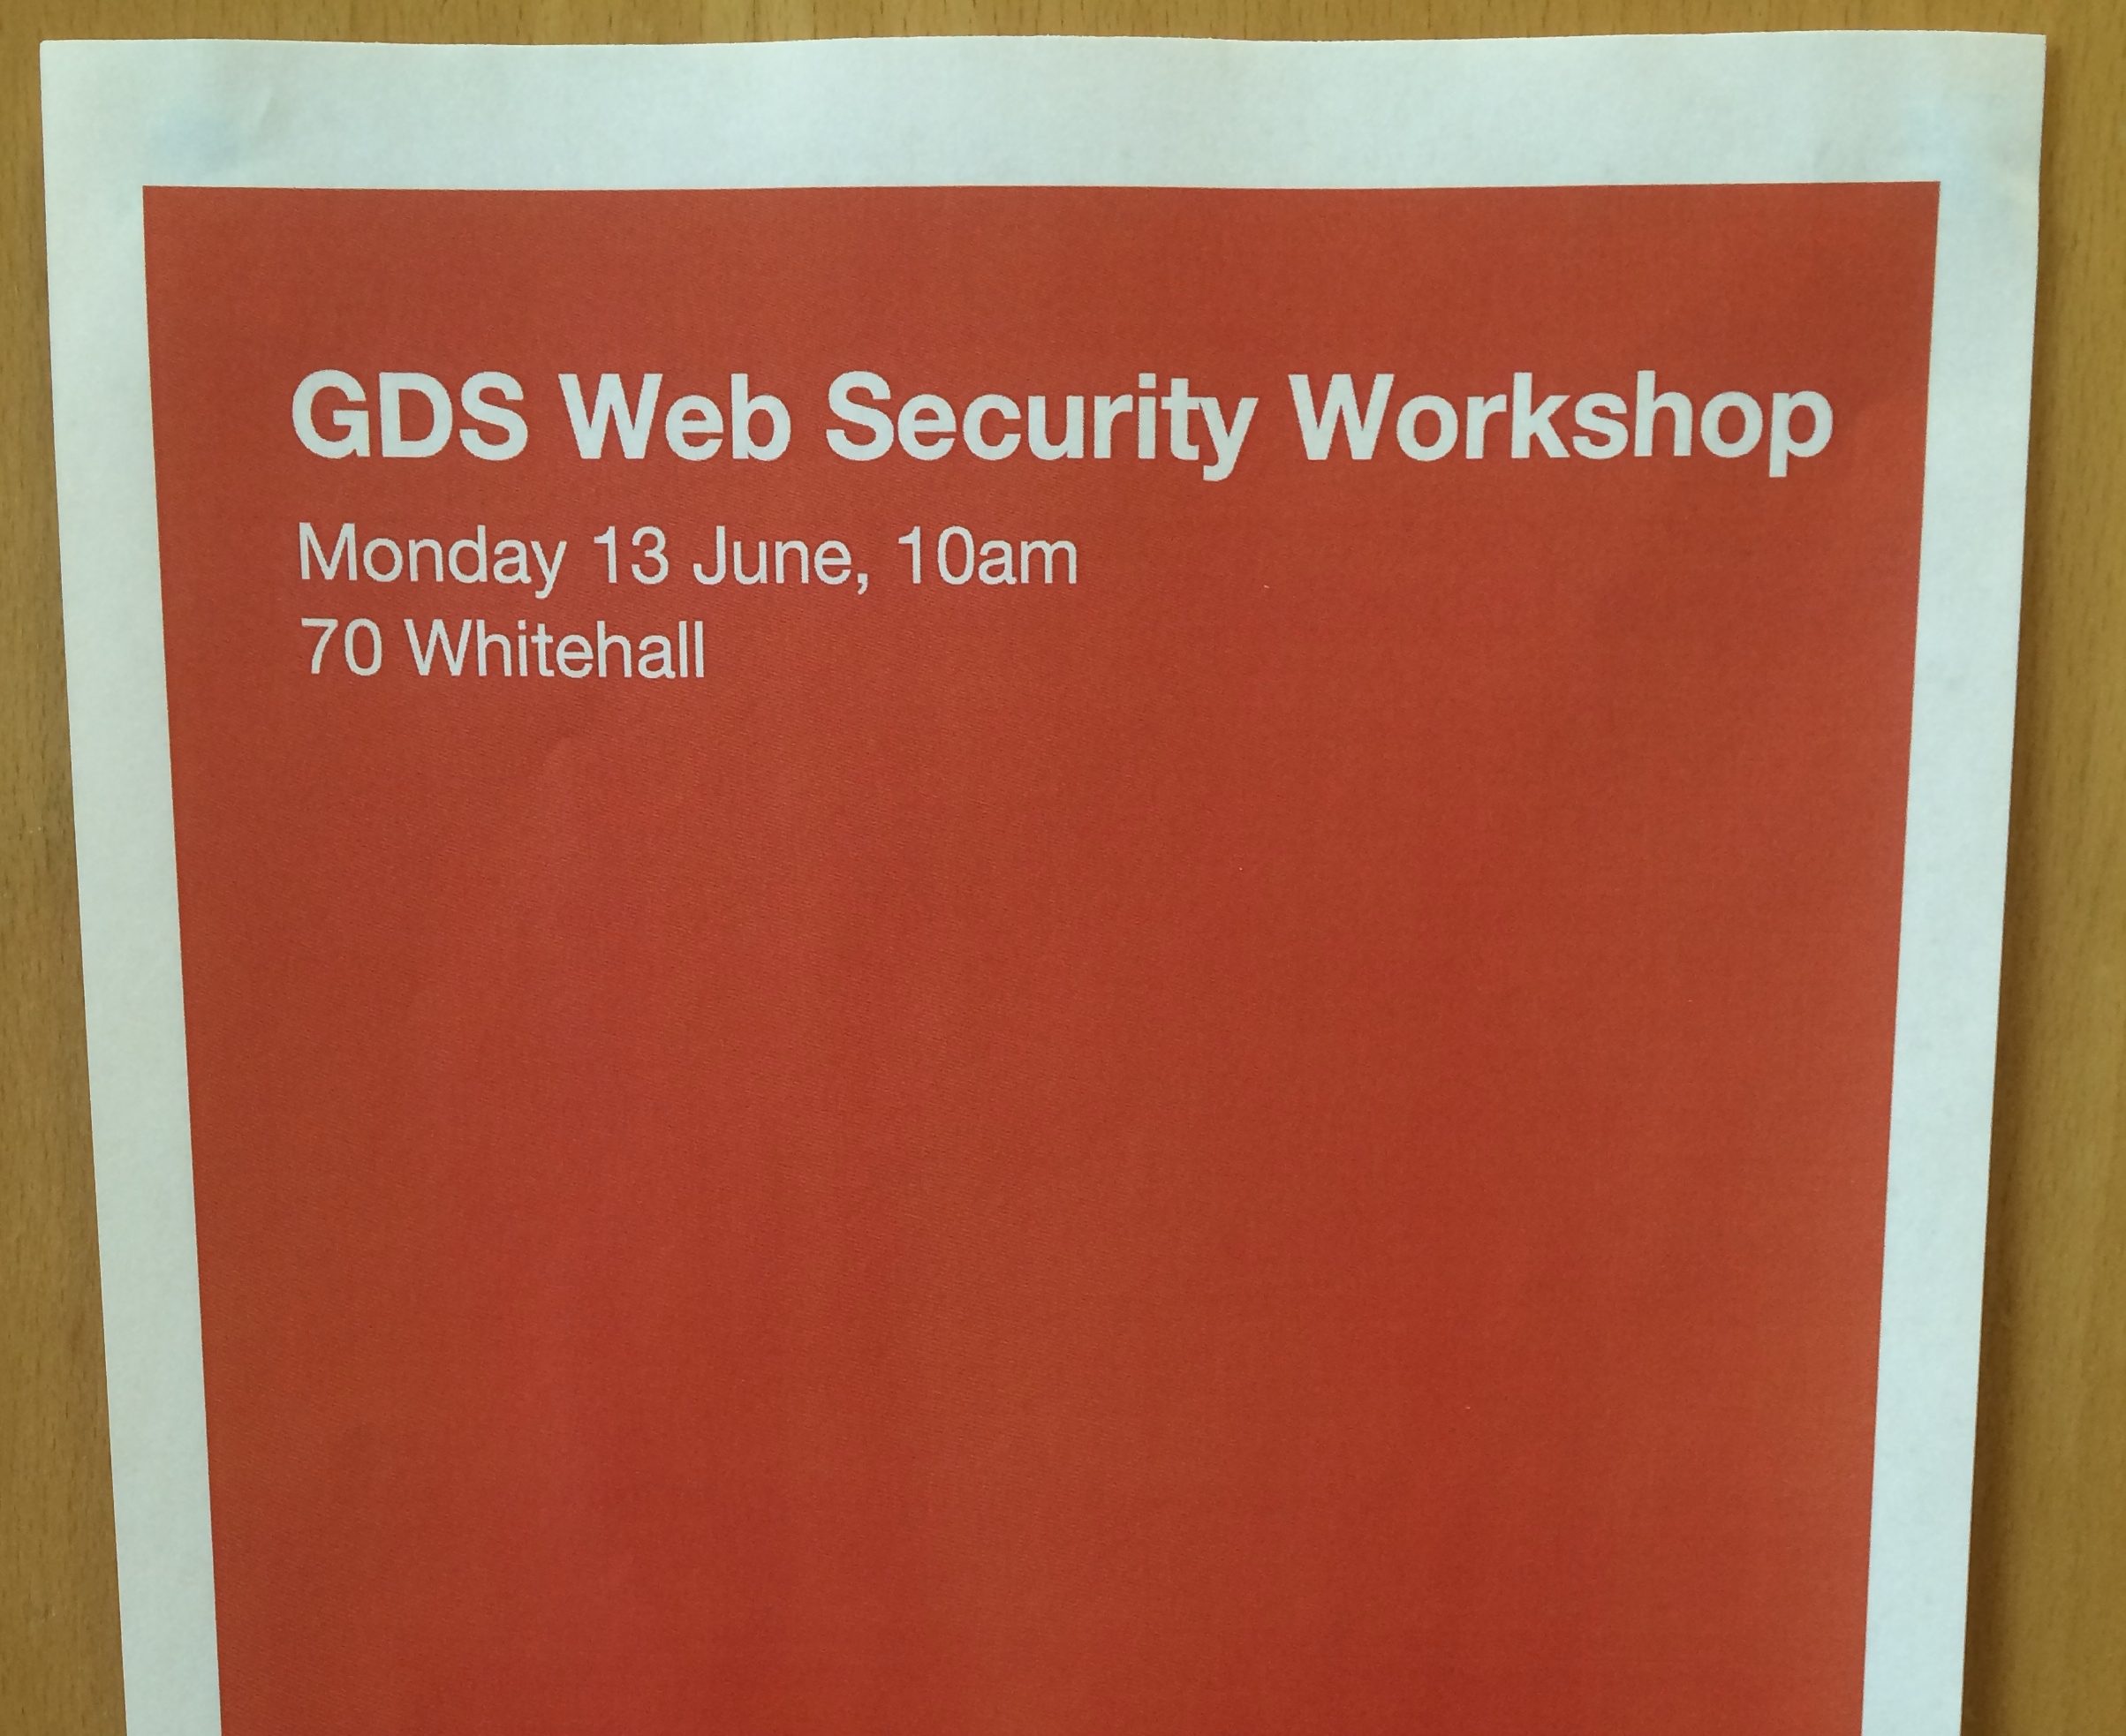 GDS Web Security Workshop poster